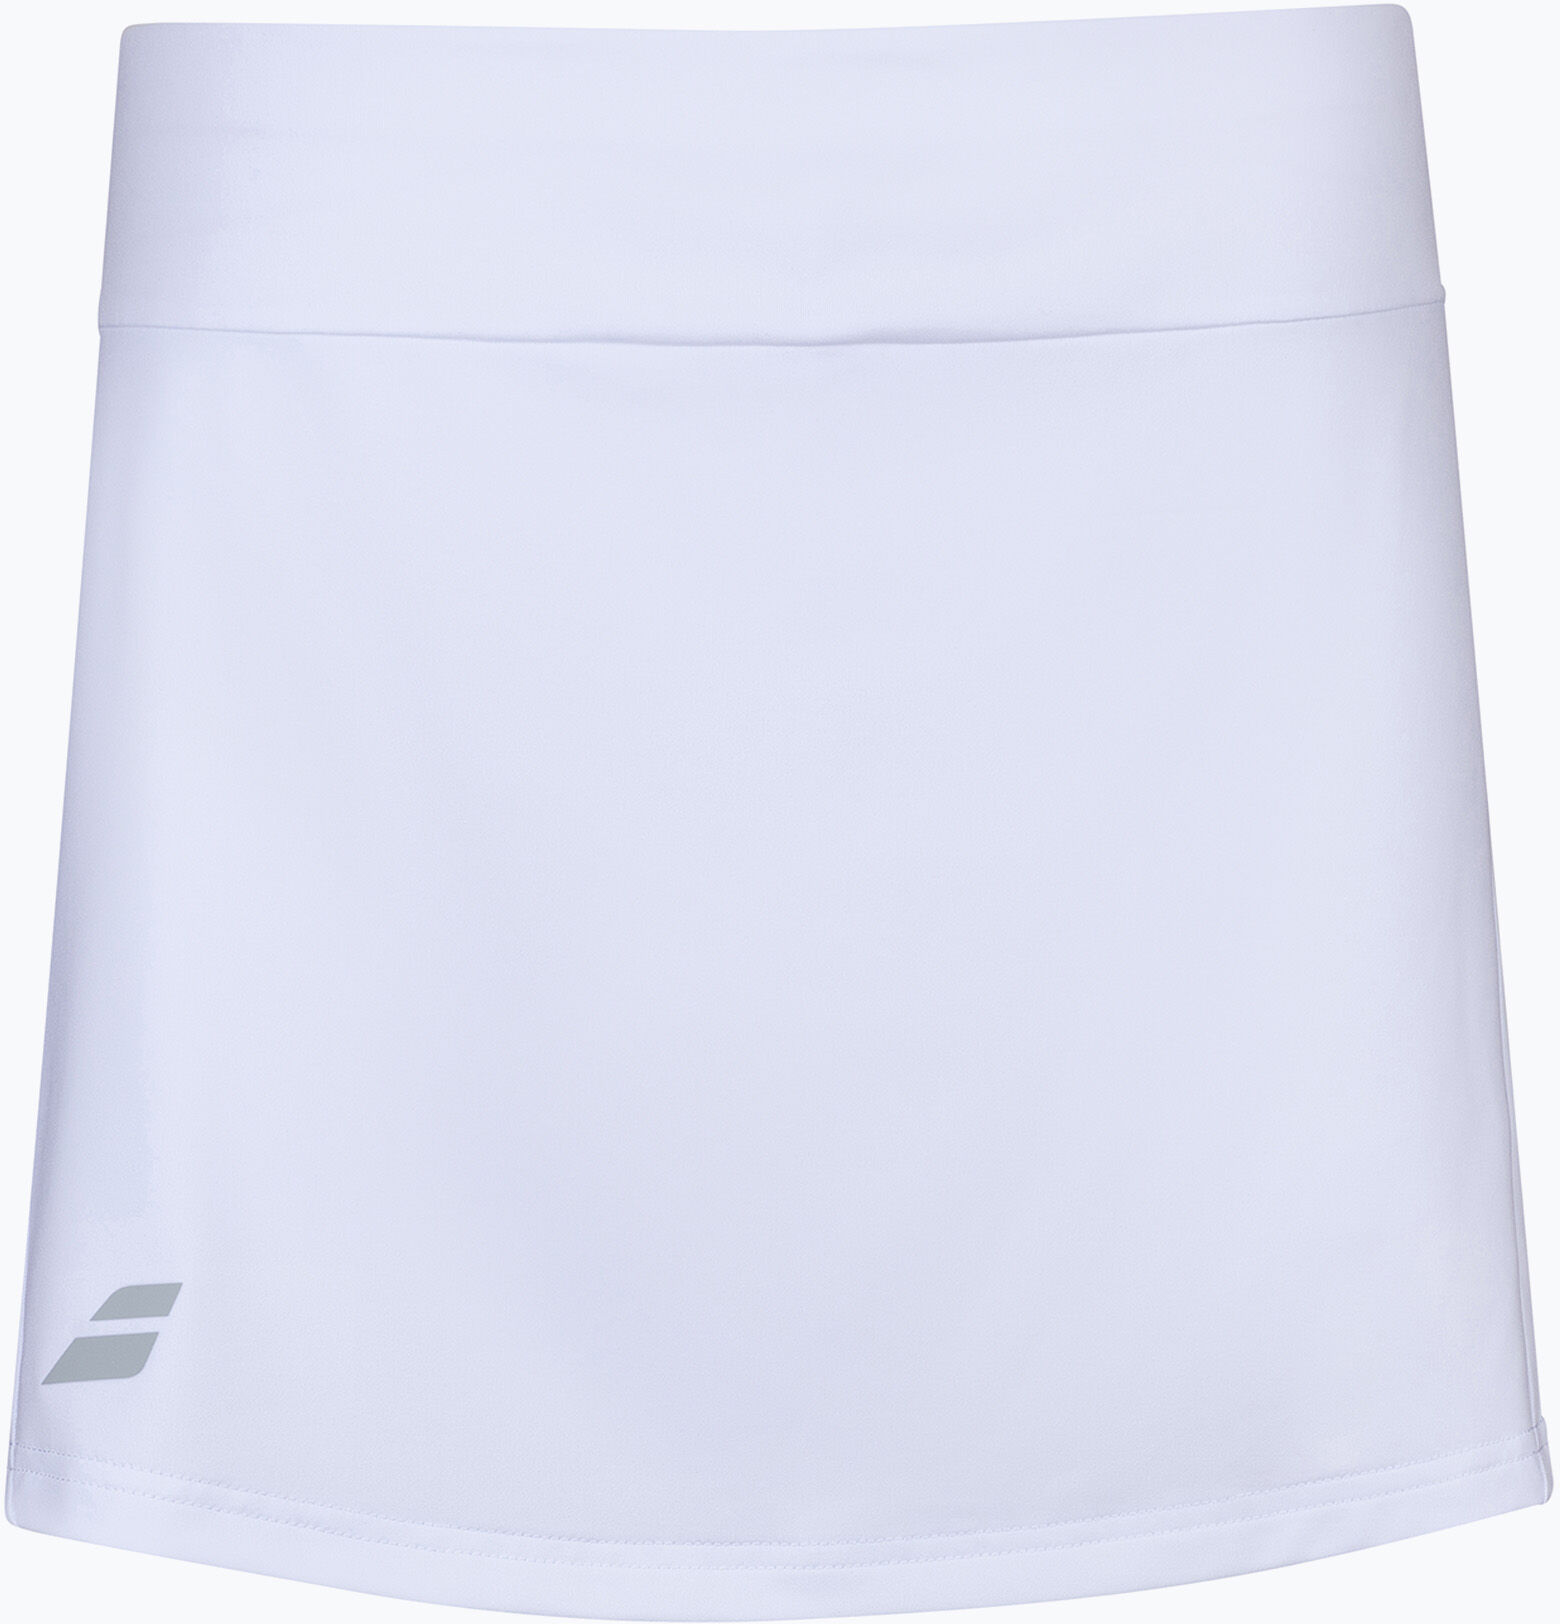 Spódnica tenisowa dziecięca Babolat Play biała 3GP1081 WYSYŁKA W 24H 30 DNI NA ZWROT